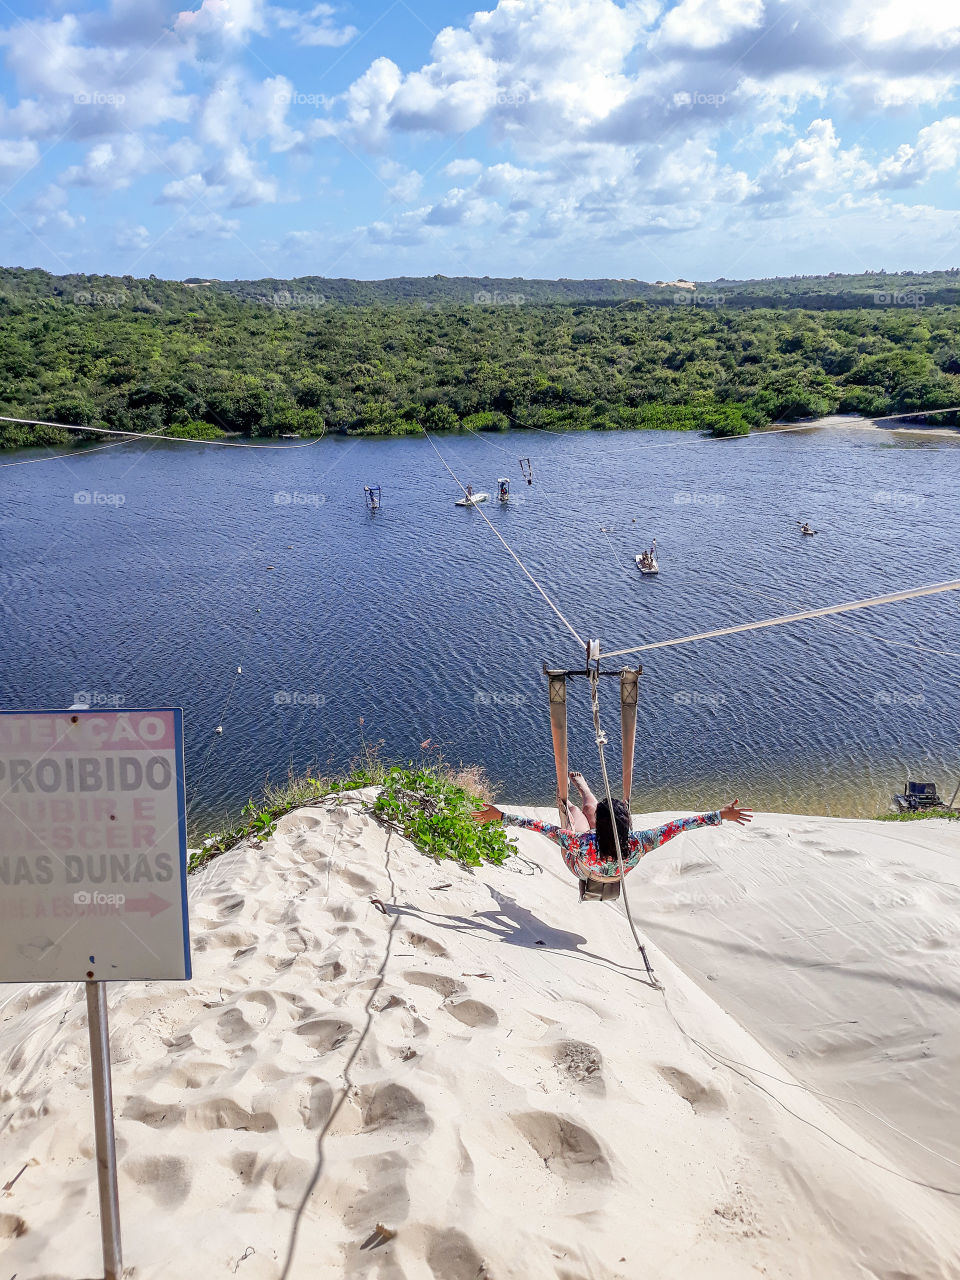 Zip line in the dunes of Natal, Brazil.